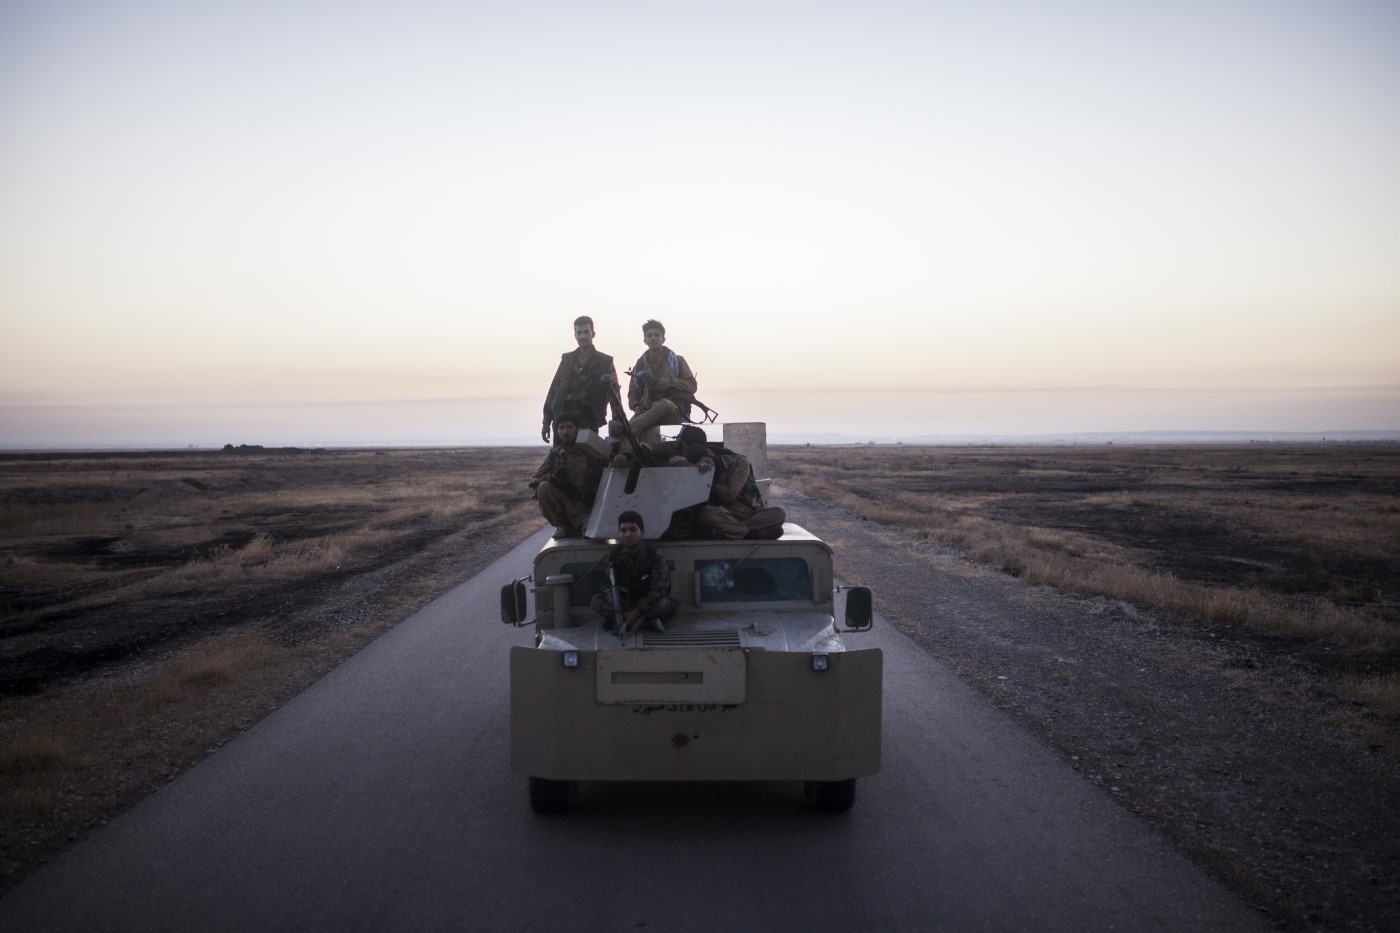 Milicianos Peshmergas exhaustos sobre un tanque minutos después del ataque del Estado Islámico. Tuzkhurmatu, Kurdistán, Irak. 20 de junio de 2017